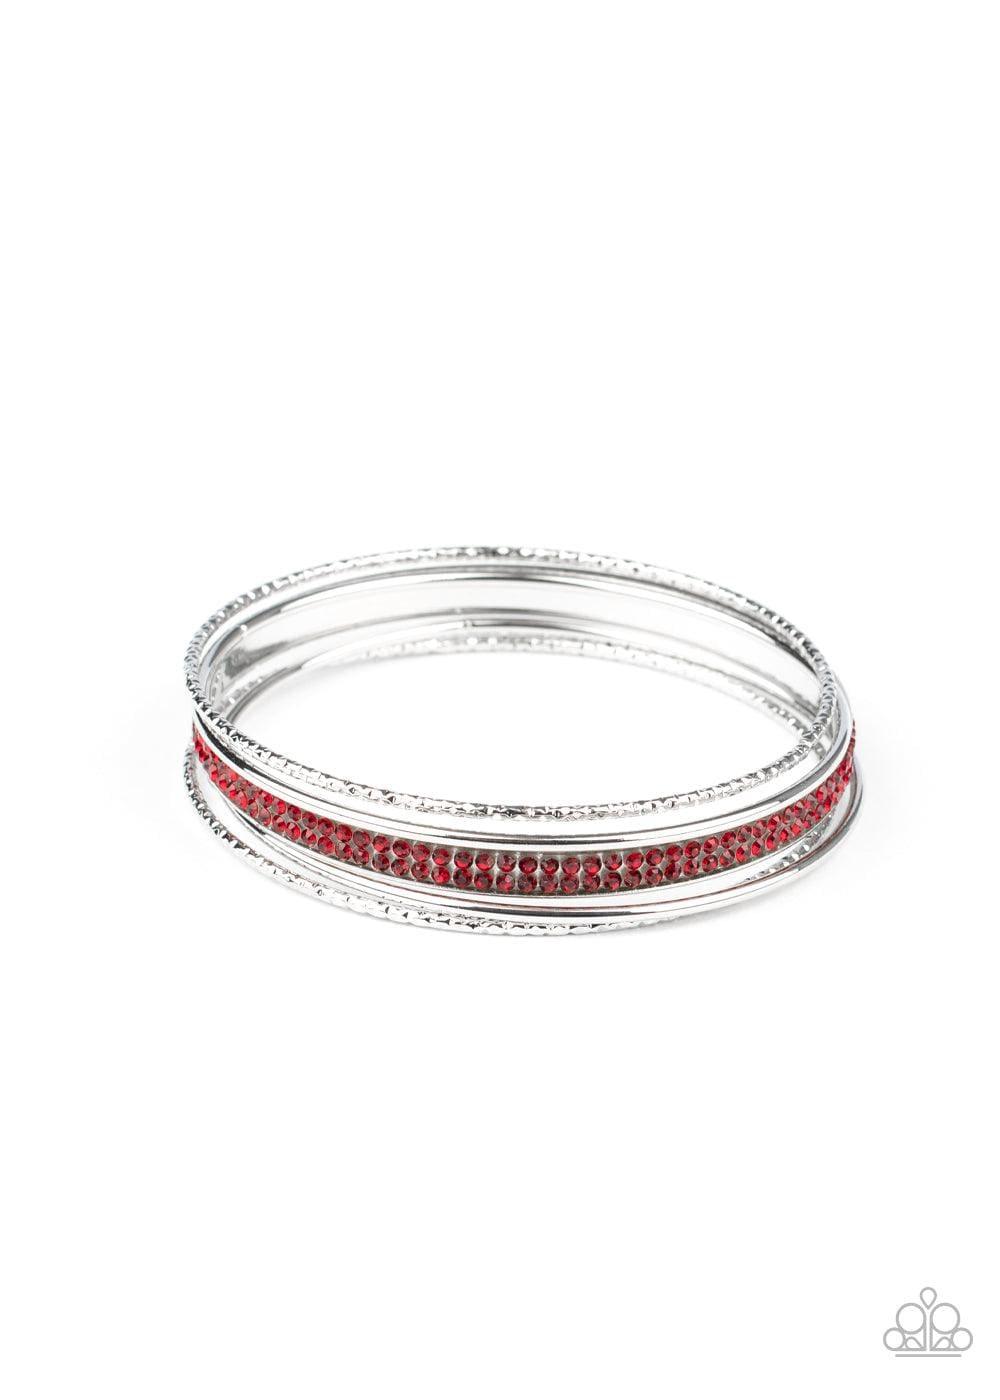 Paparazzi Accessories - Heap It On - Red Bracelet - Bling by JessieK